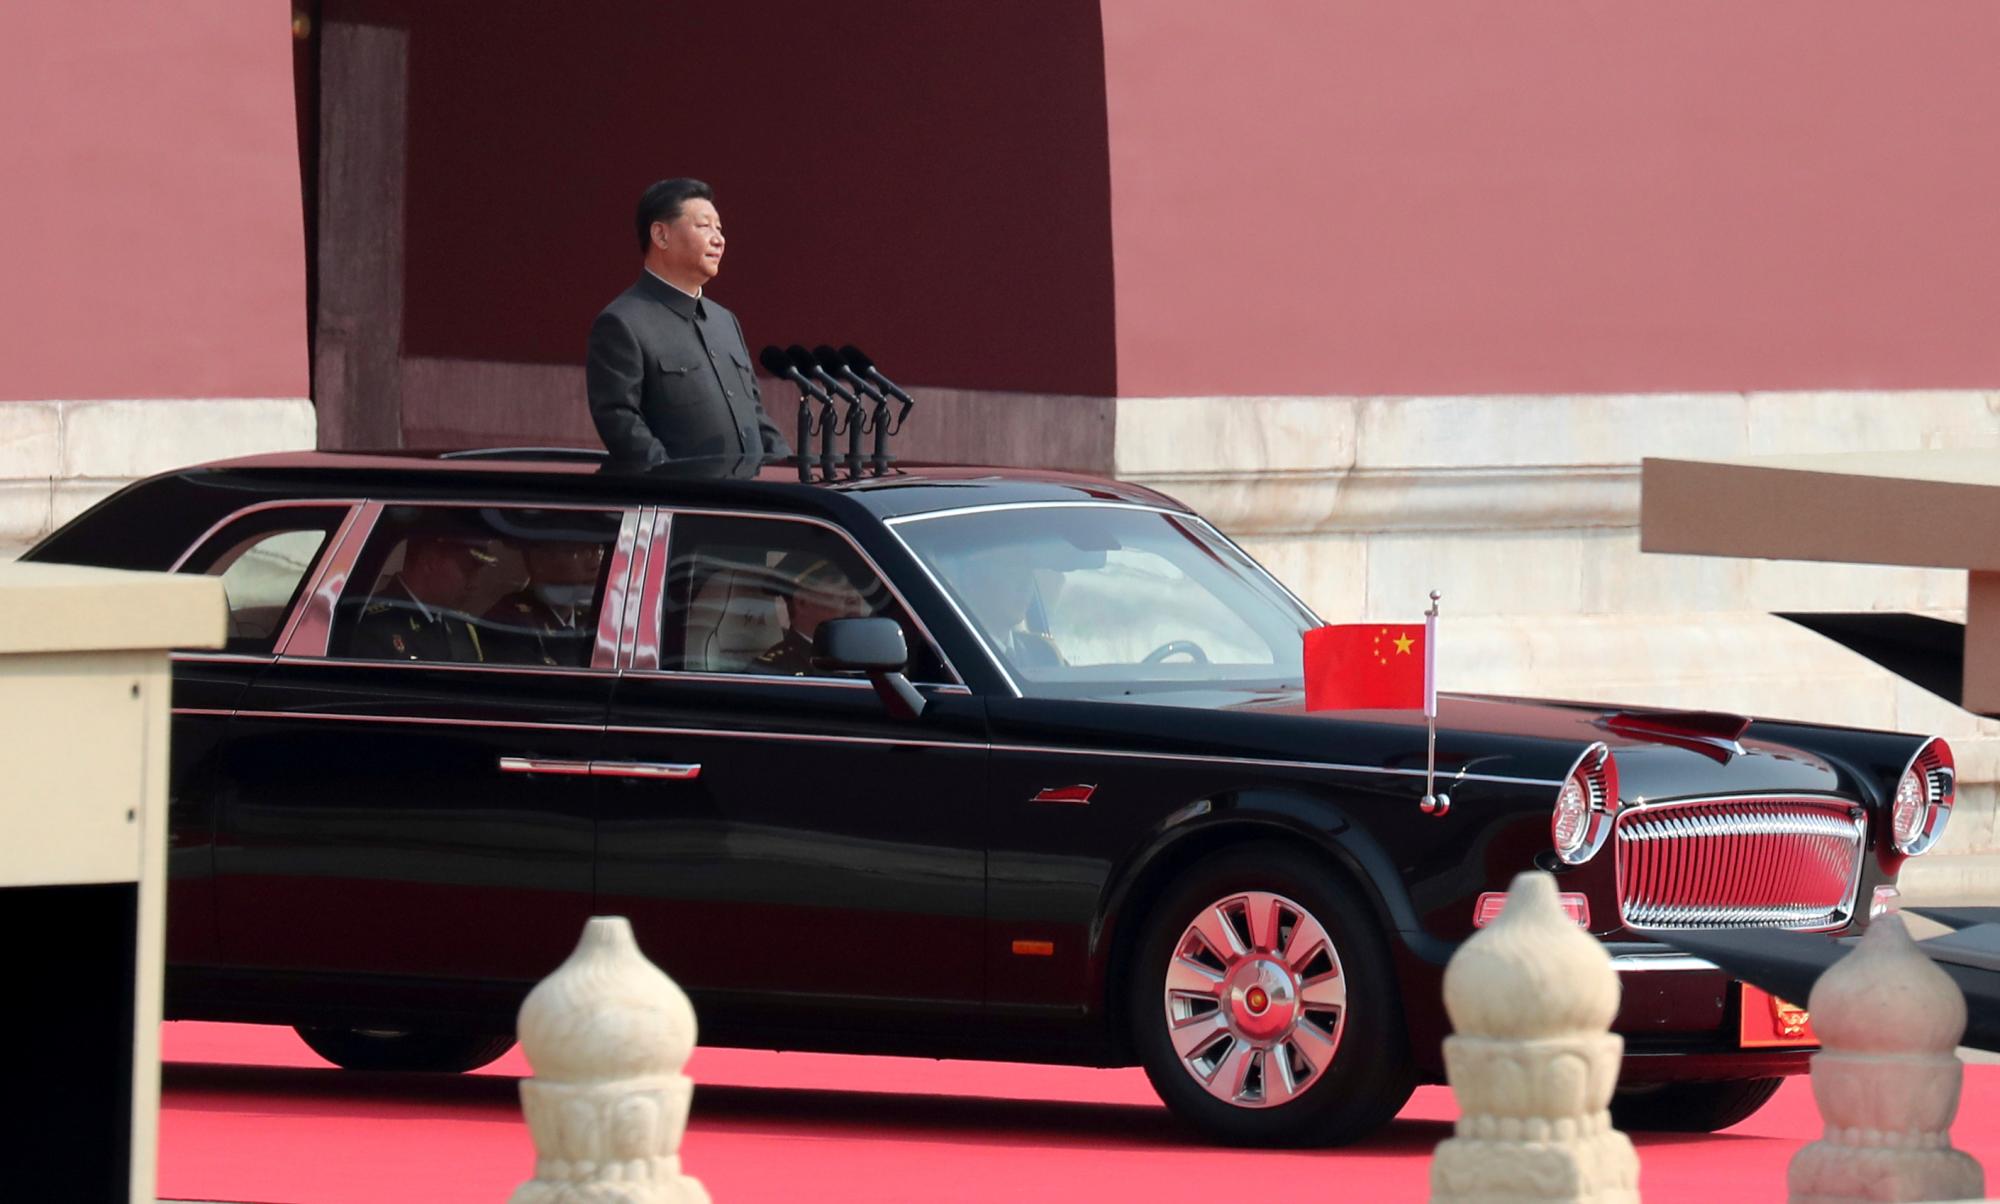 El líder chino Xi Jinping viaja en una limusina descapotable durante un desfile para conmemorar el 70 aniversario de la fundación de la China comunista en Beijing, el martes 1 de octubre de 2019.